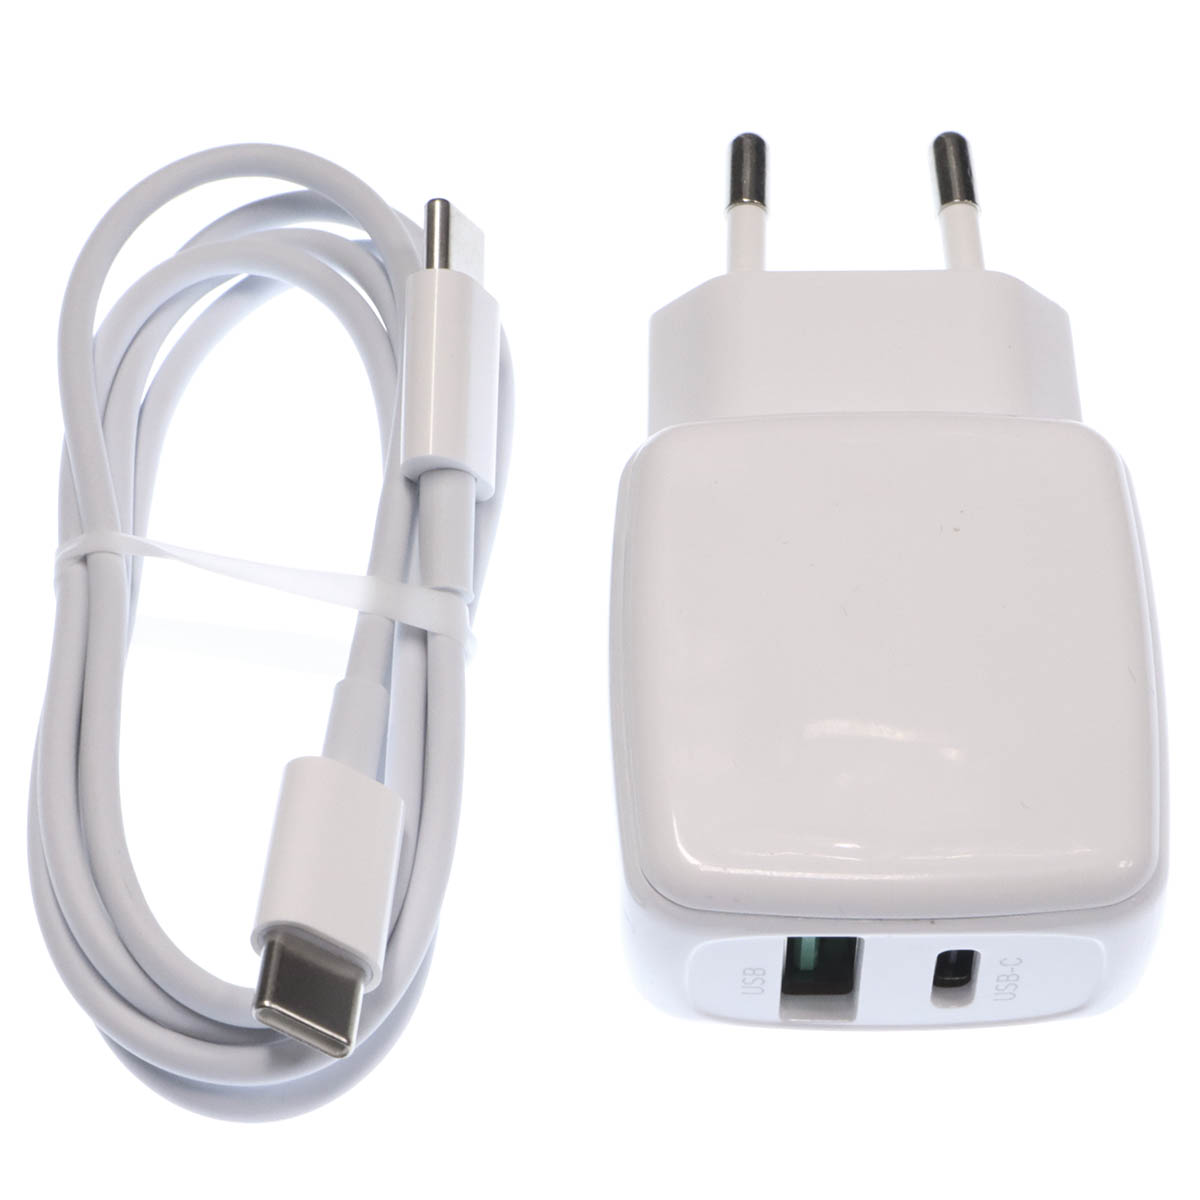 СЗУ (Сетевое зарядное устройство) EARLDOM ES-EU21C с кабелем USB Type C на USB Type C, 20W, 1 USB Type C, 1 USB, QC3.0, цвет белый